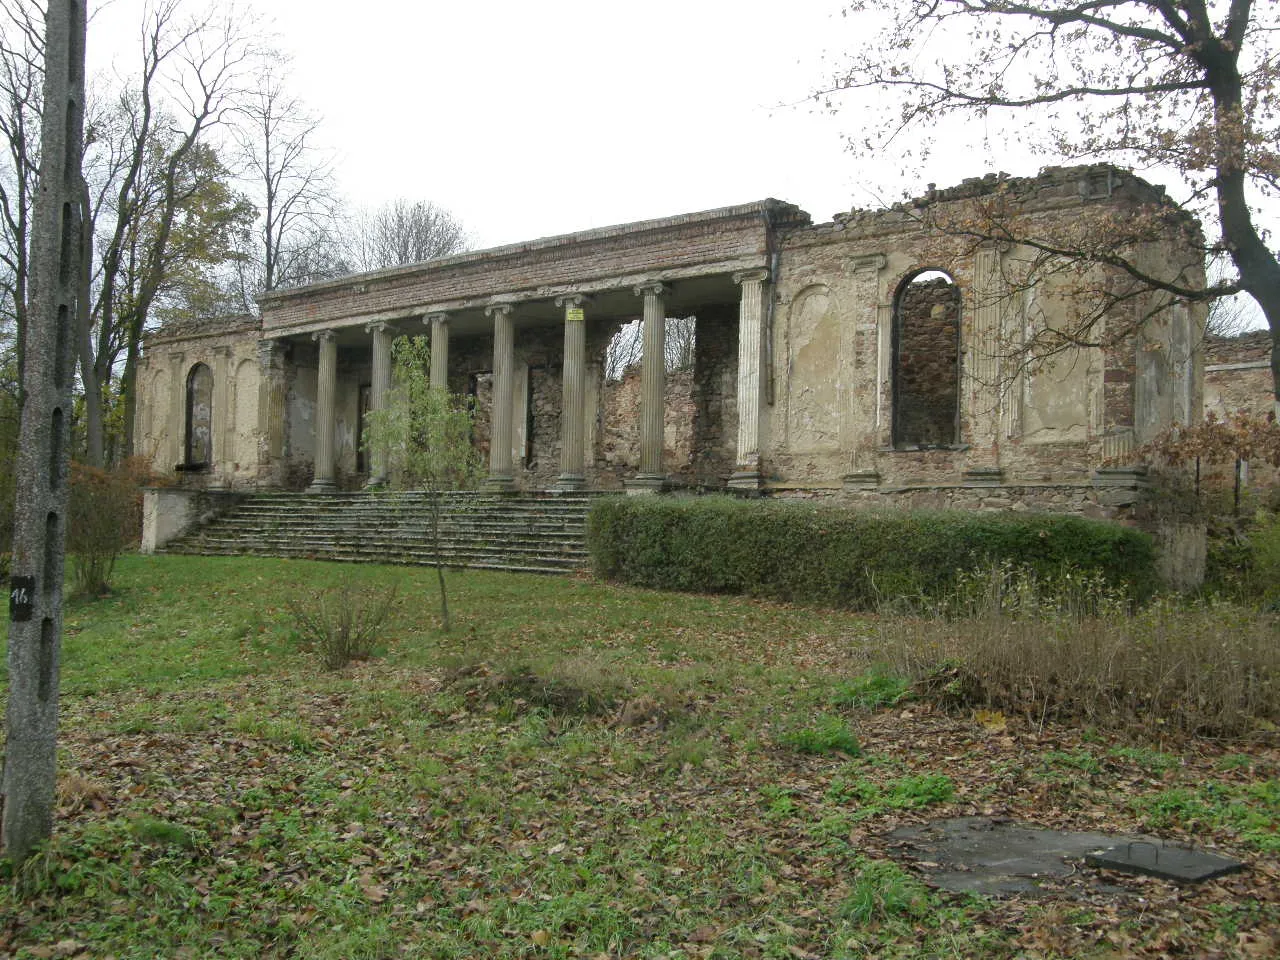 Photo showing: Klasycystyczny pałac, którego budowę rozpoczął i projekt zamówił Hugo Kołłątaj. budowę dkończył bratanek księdza, Eustachy Kołłątaj, wzniósł ok. 1830 roku.